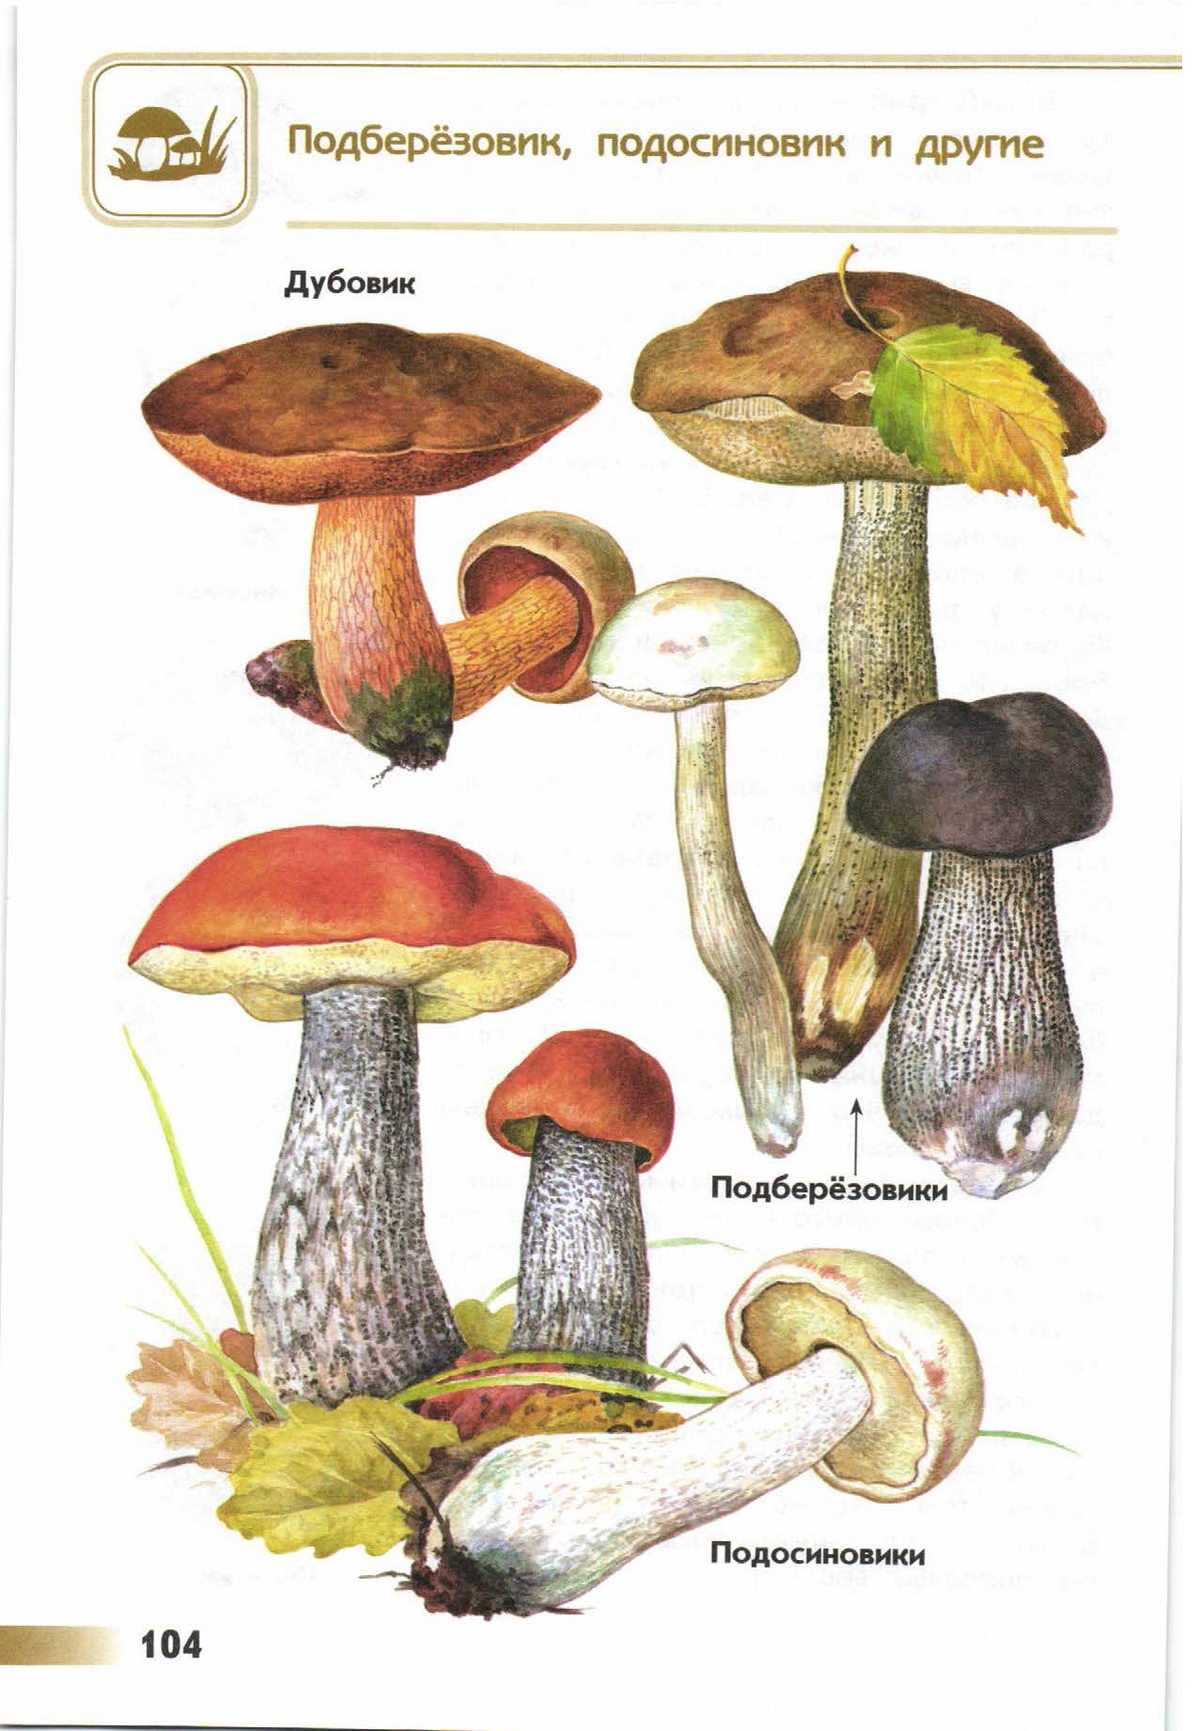 Топ 10 грибов из березовой посадки или леса